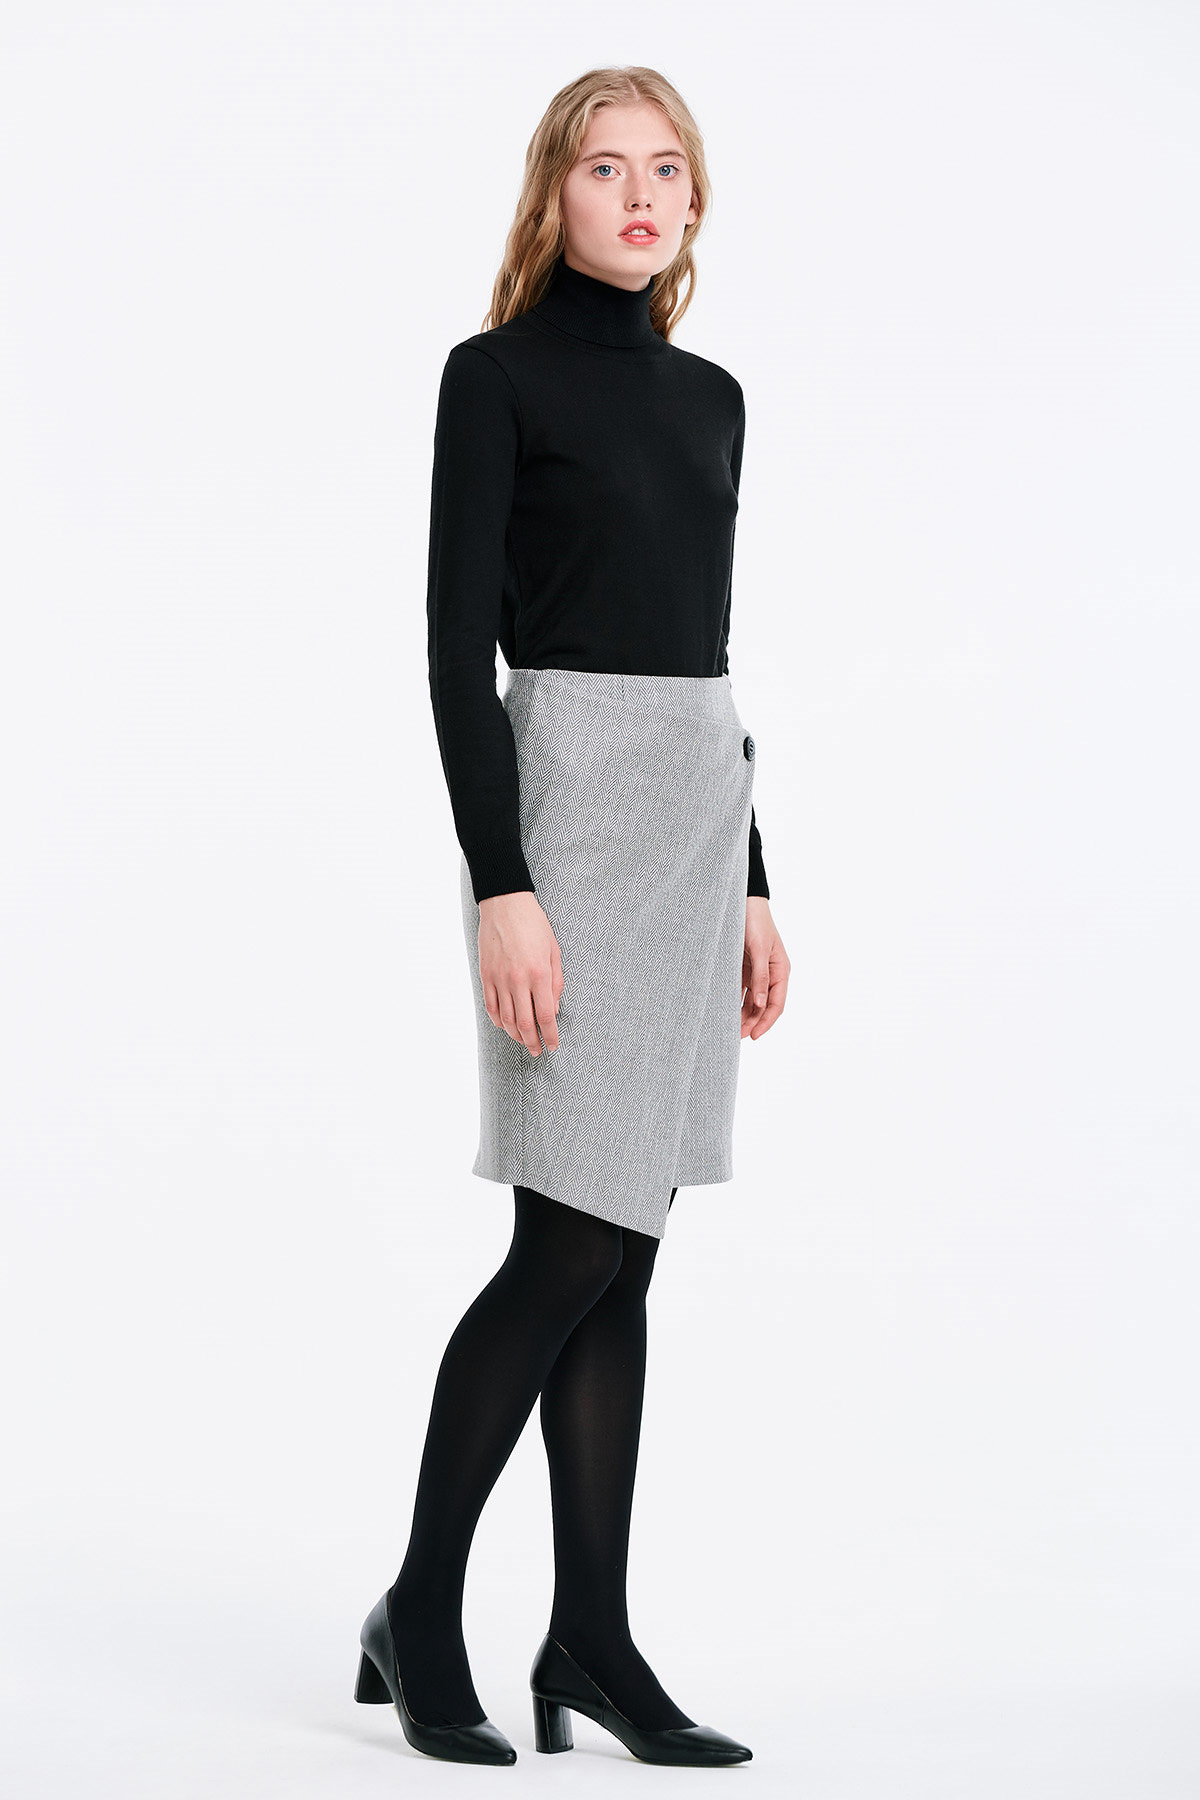 Wrap skirt with a herringbone print, photo 4